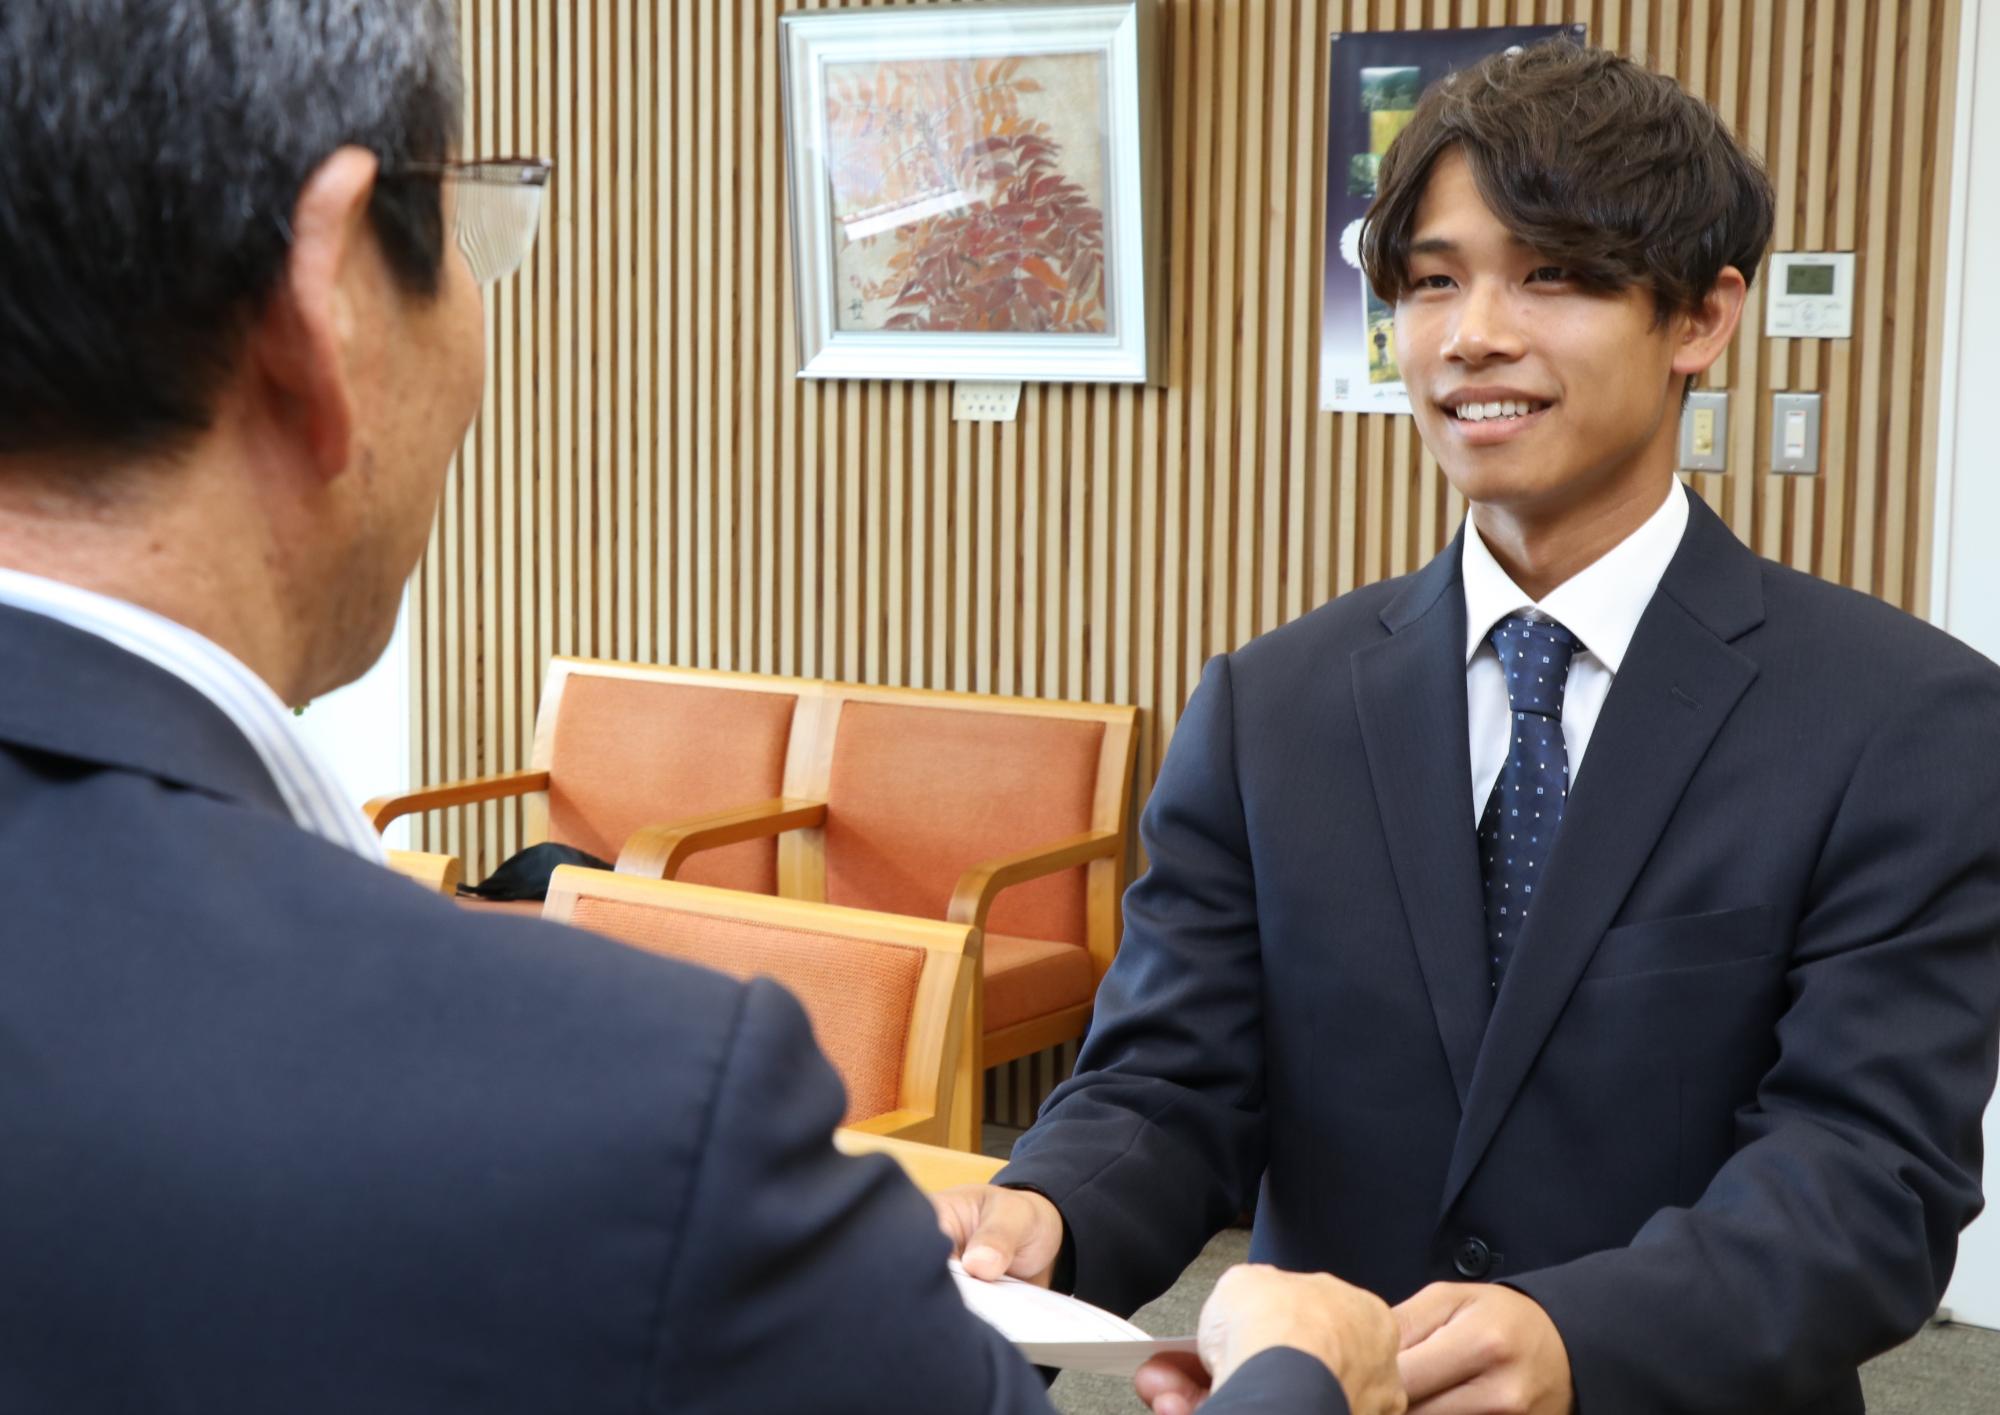 市長室で市長と田中さんが向き合い、田中さんが市長から委嘱状を受け取っている写真